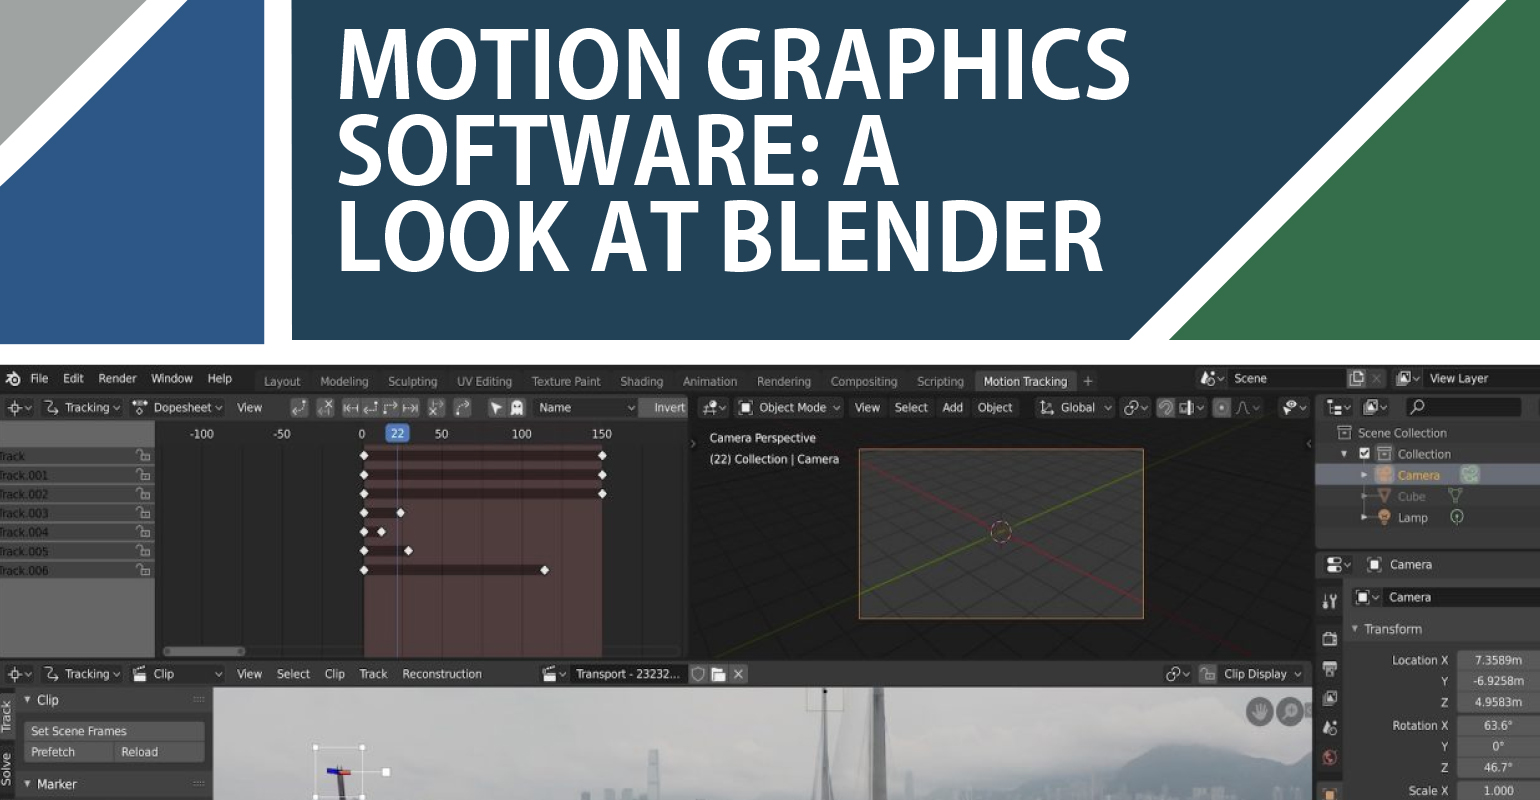 Motion Graphics Software: A Look at Blender | Live Design Online